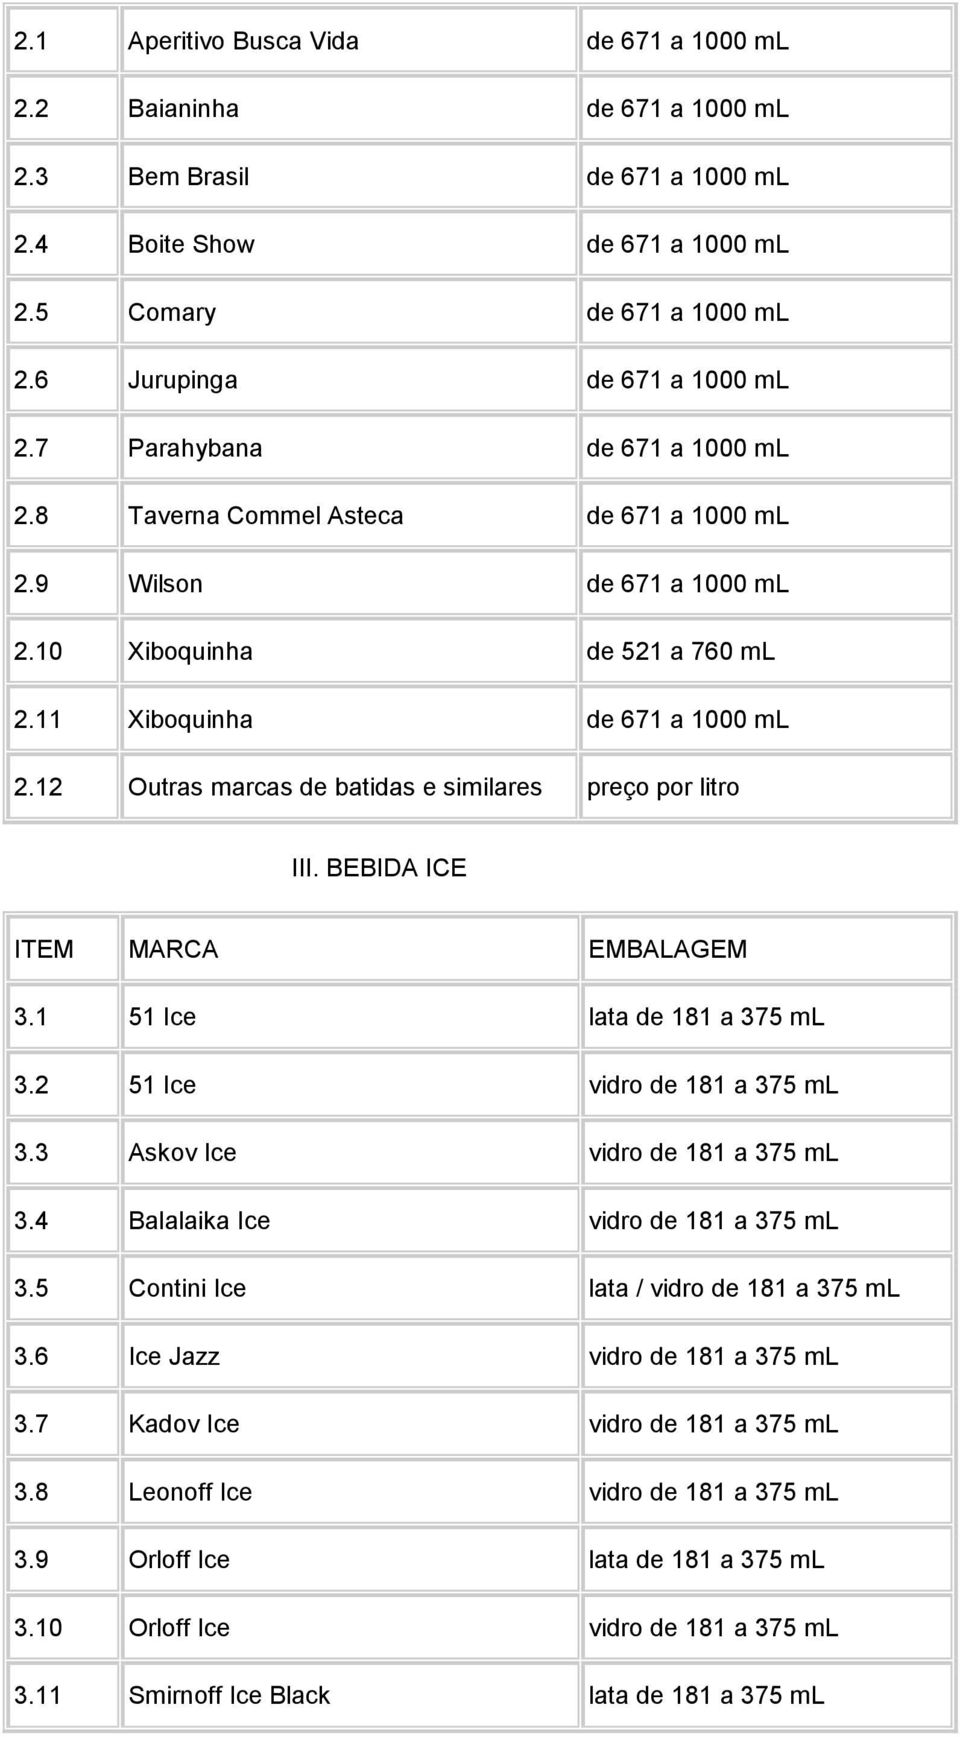 12 Outras marcas de batidas e similares preço por litro III. BEBIDA ICE 3.1 51 Ice lata de 181 a 375 ml 3.2 51 Ice vidro de 181 a 375 ml 3.3 Askov Ice vidro de 181 a 375 ml 3.